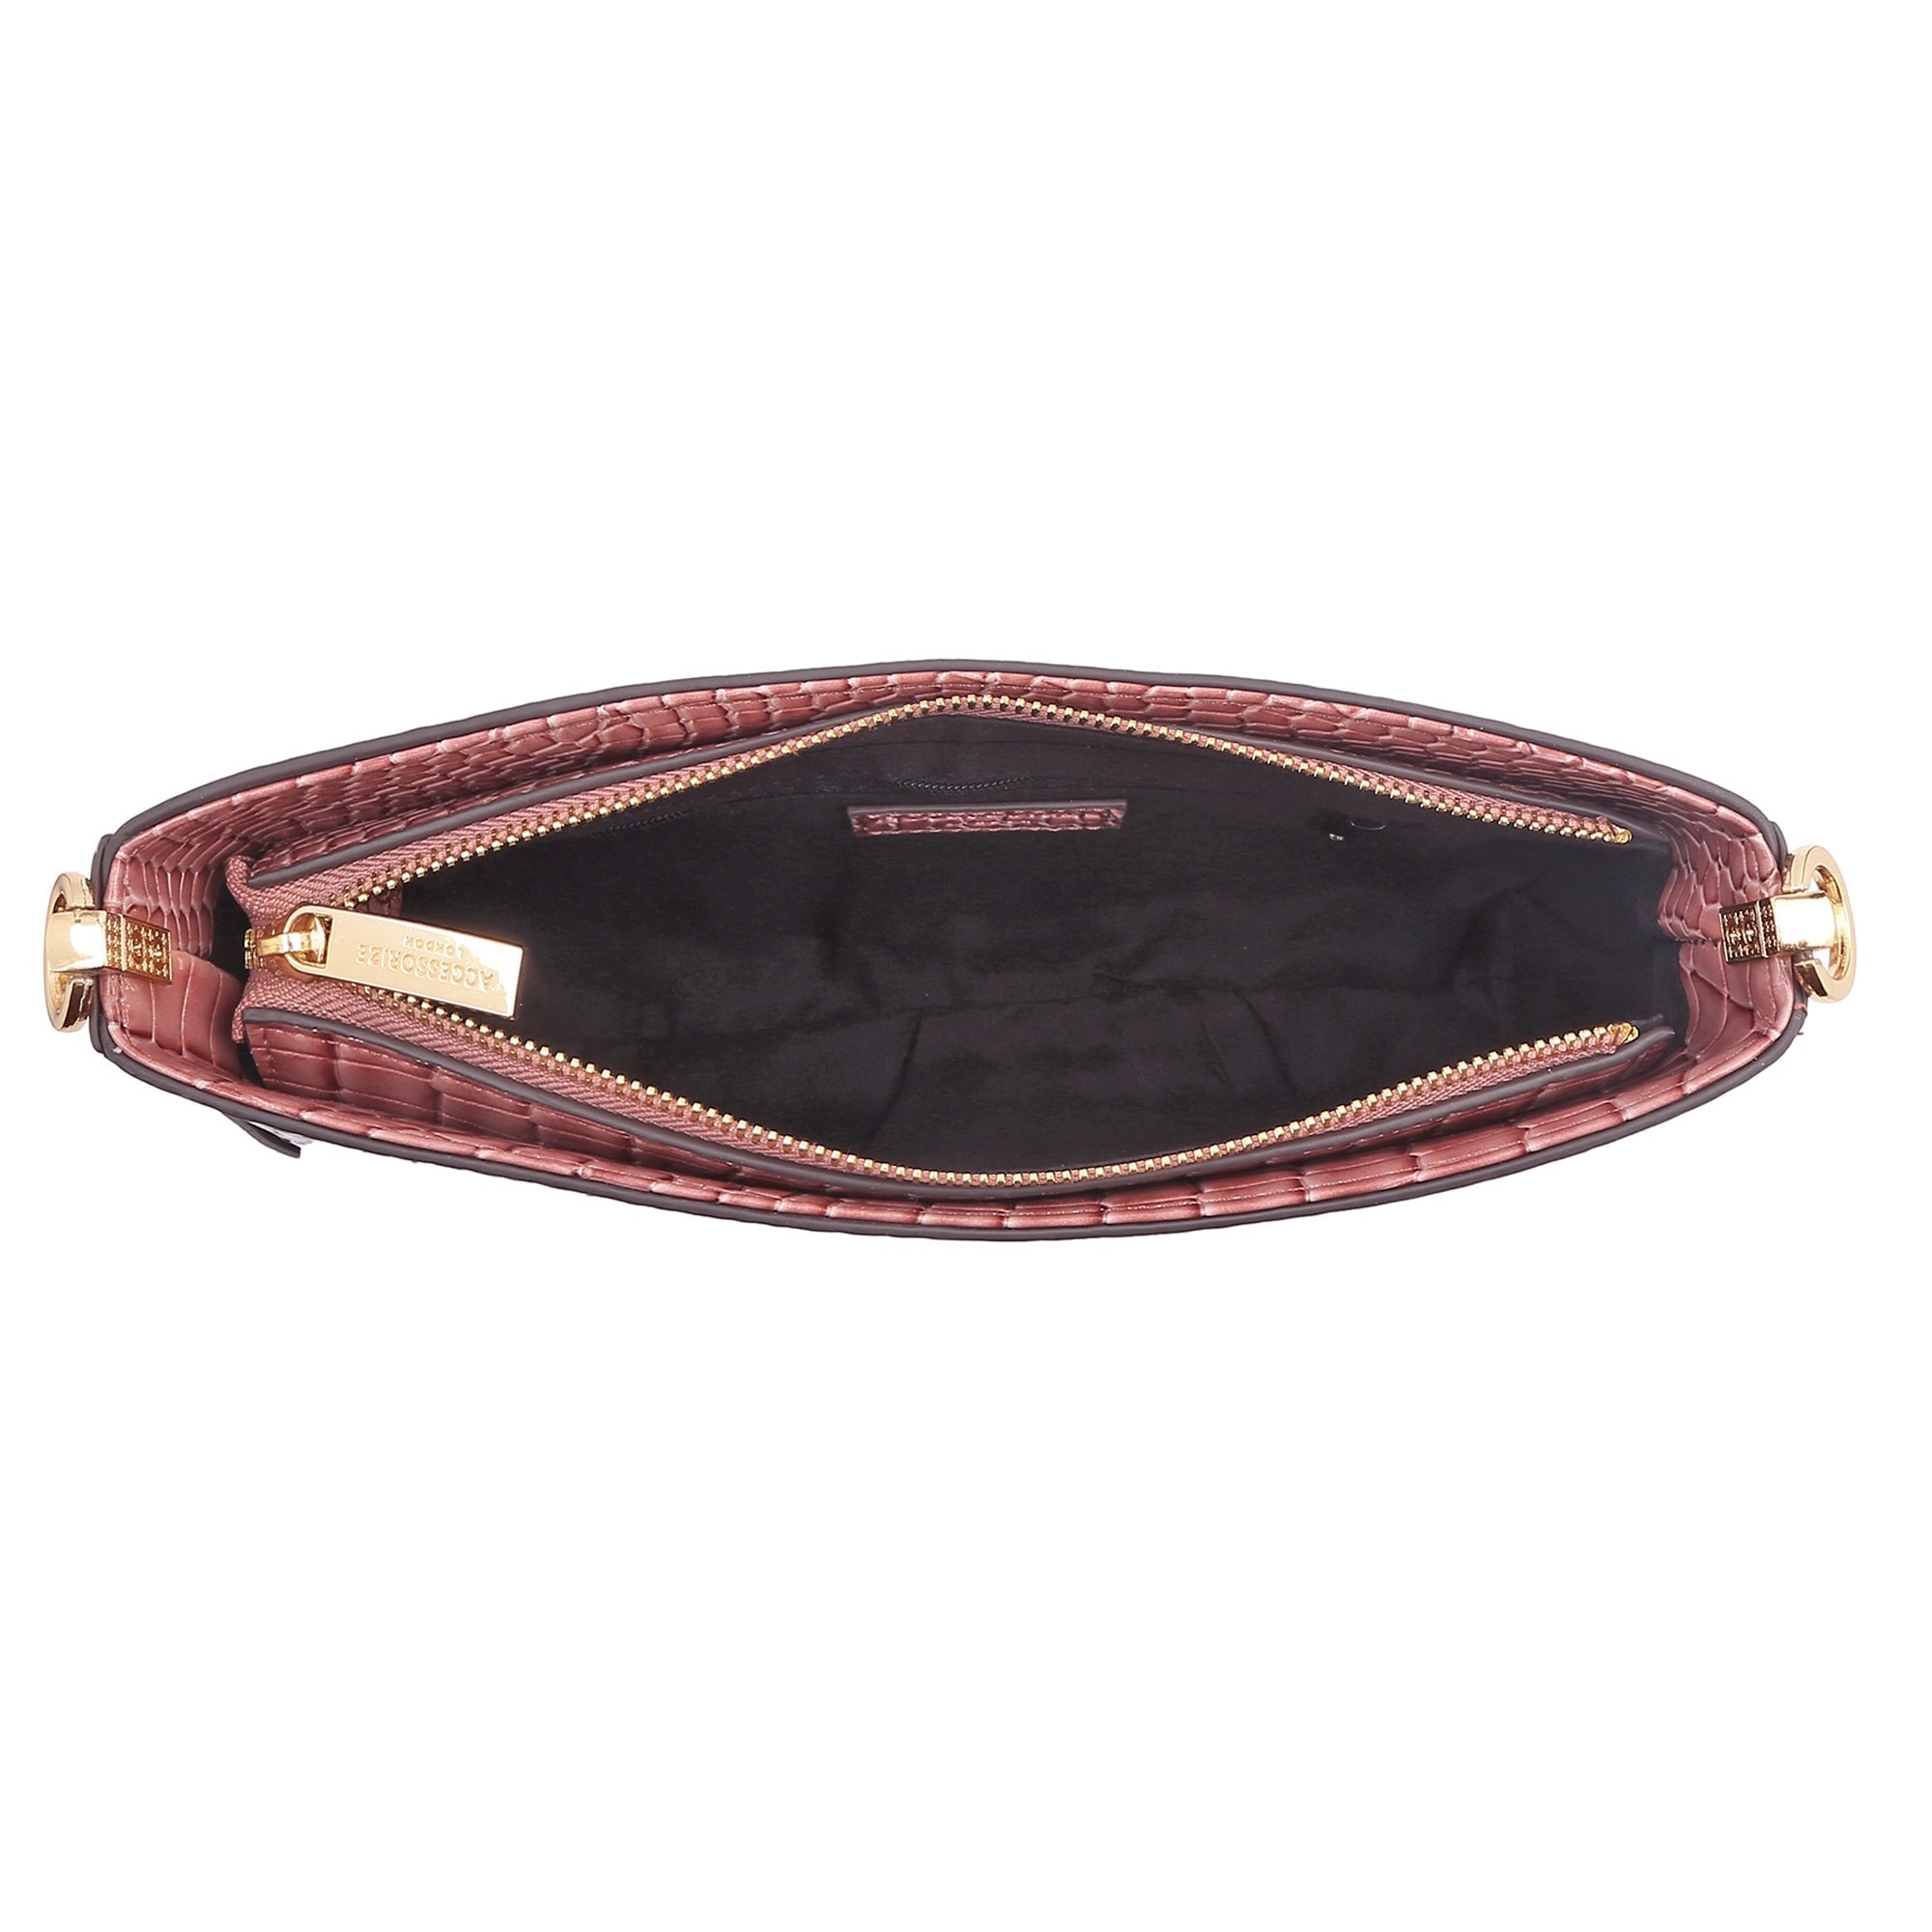 Accessorize London Women's Faux Leather Croc Roxanne Baguette Shoulder Bag - Pink